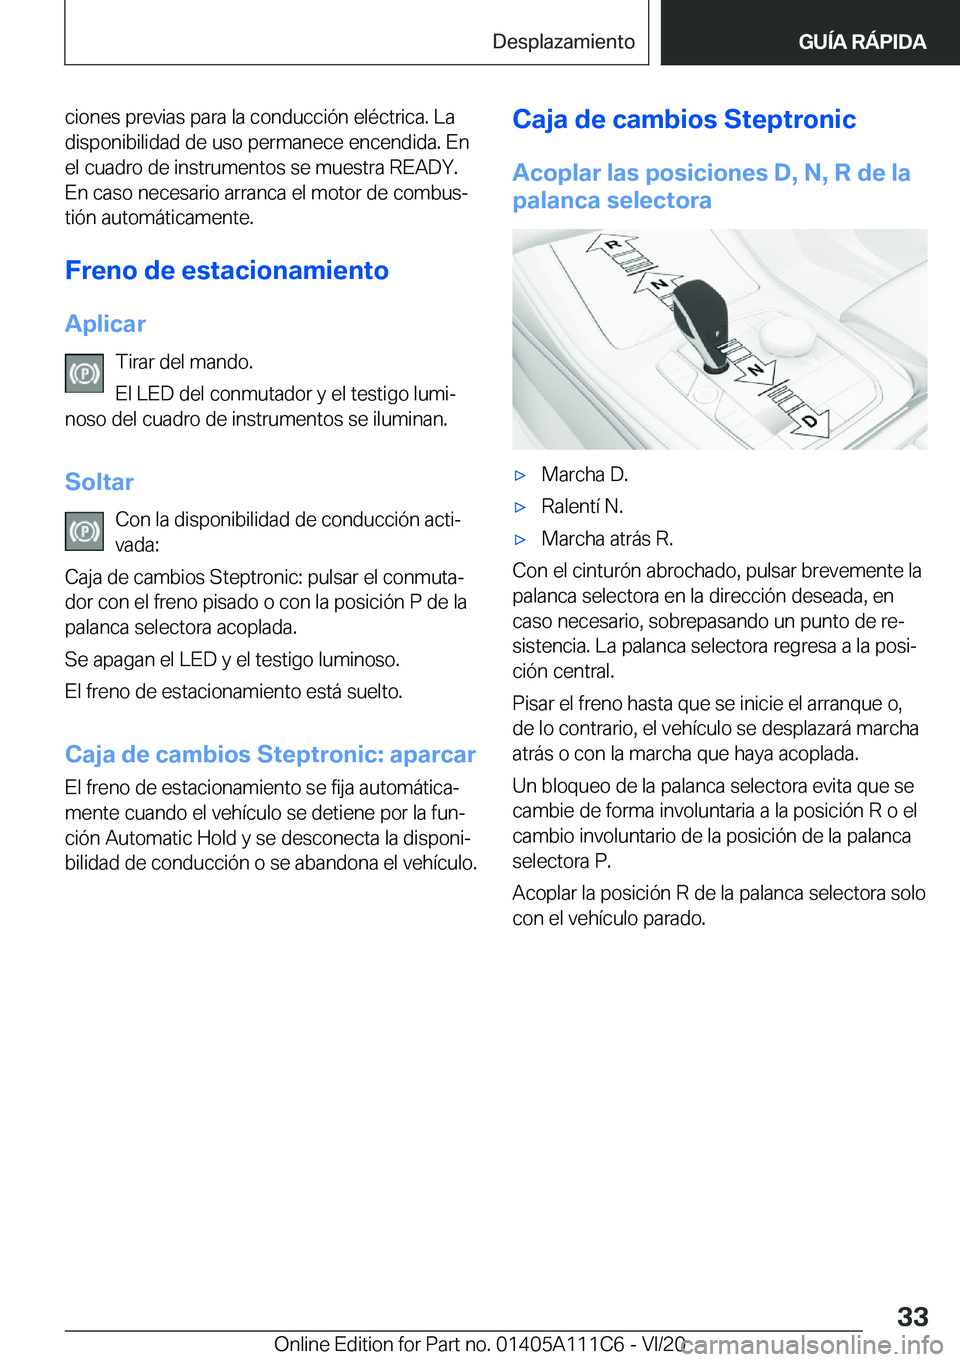 BMW 3 SERIES SEDAN PLUG-IN HYBRID 2021  Manuales de Empleo (in Spanish) �c�i�o�n�e�s��p�r�e�v�i�a�s��p�a�r�a��l�a��c�o�n�d�u�c�c�i�